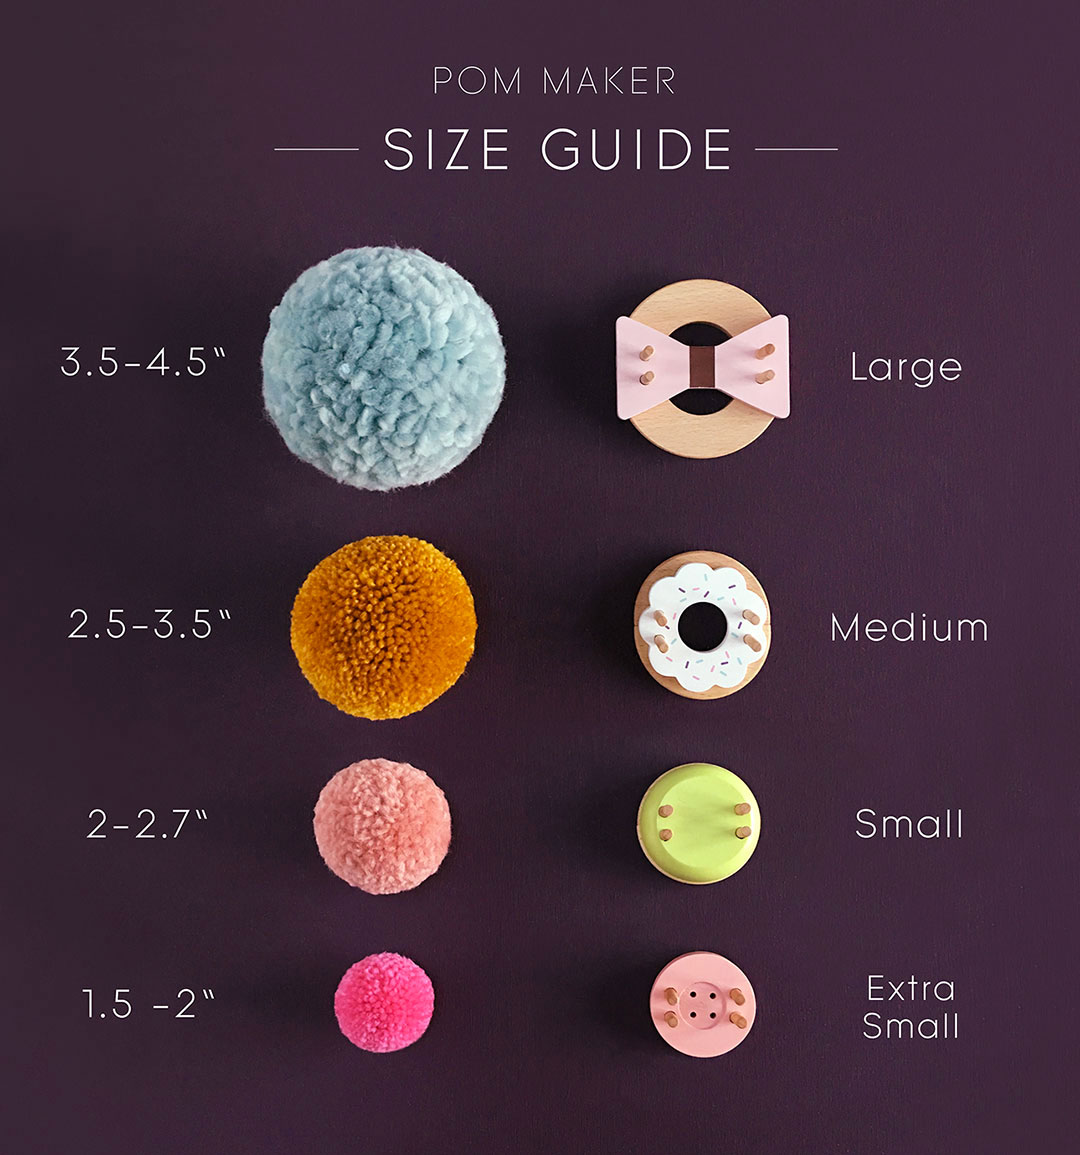 Afsky Farmakologi ydre Pom Maker Size Guide - Pom Maker